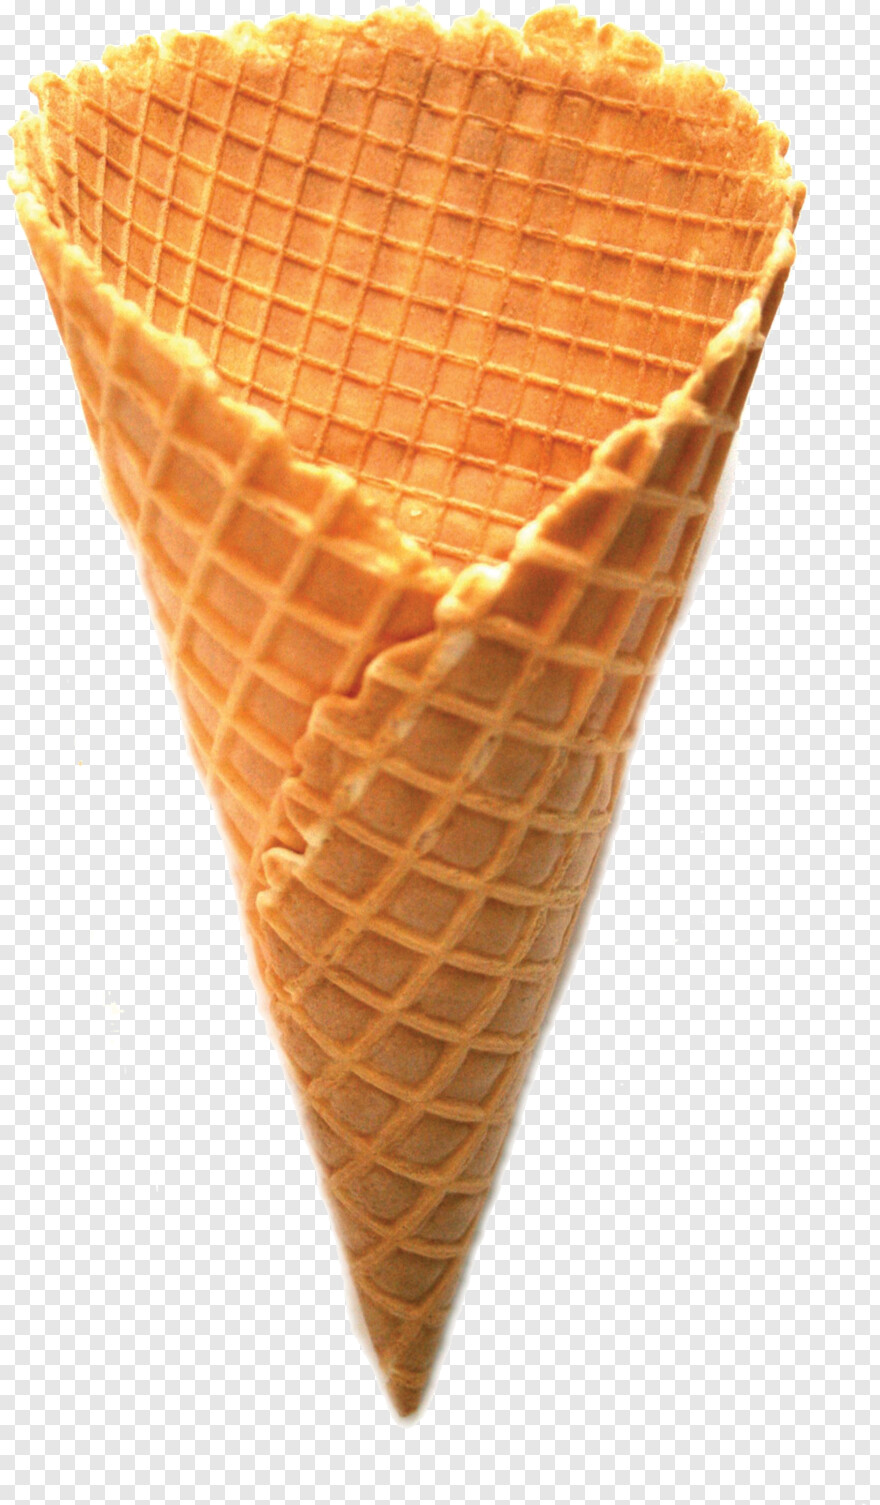 ice-cream-sundae # 966651